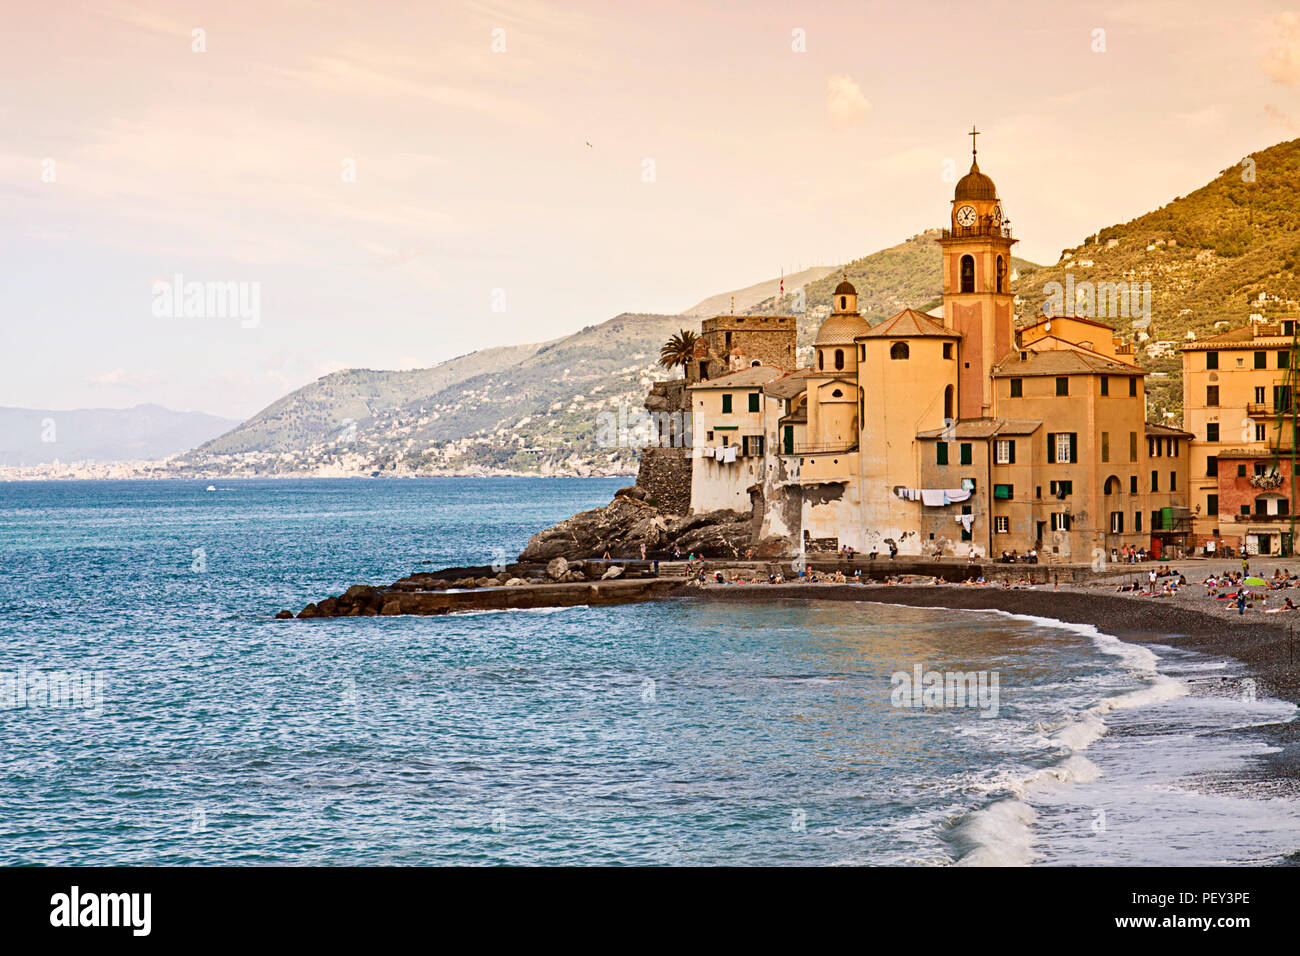 Italia, hermosa vista de Camogli, pueblo de pescadores en la costa ligur, cerca de Génova, con la iglesia de Santa Maria Assunta prominente en el mar Foto de stock